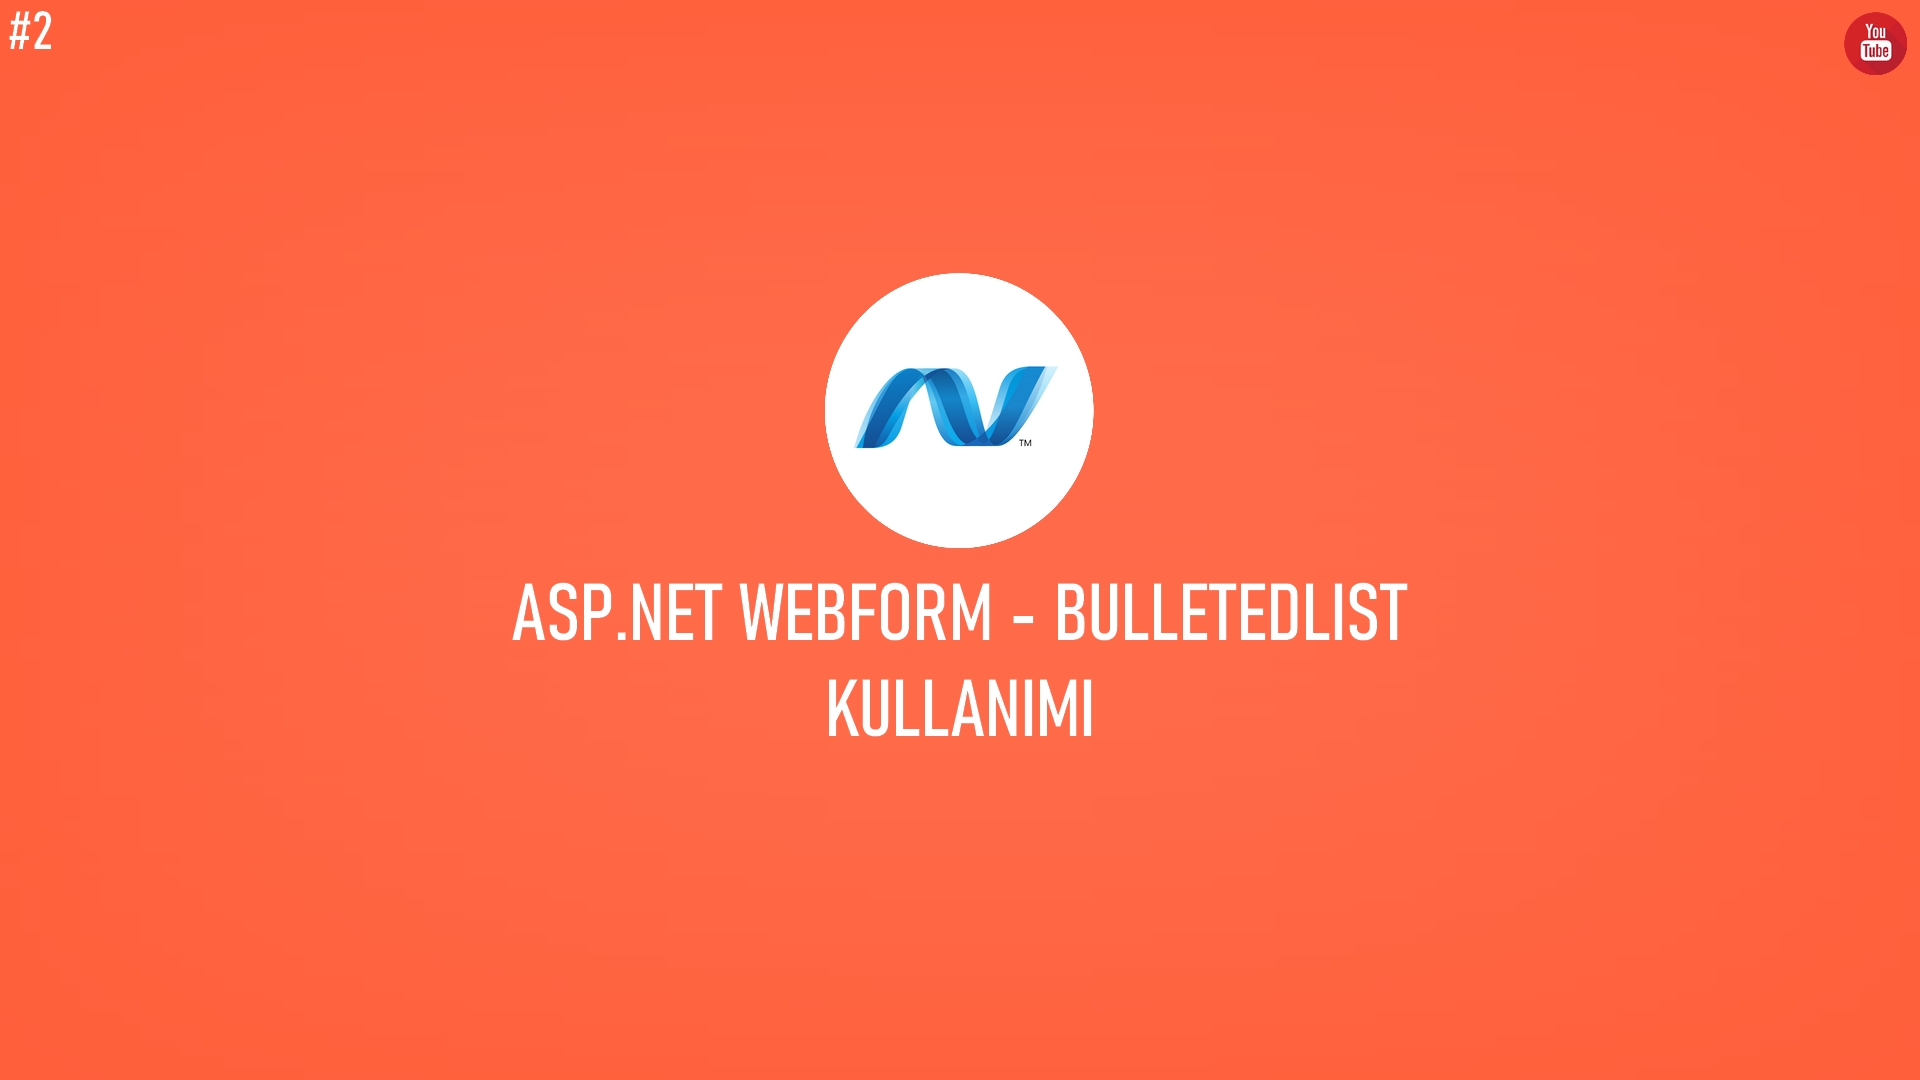 C# ASP.NET WebForm - BulletedList Kullanımı (Video İçerik) başlıklı içeriğin kapak resmi.